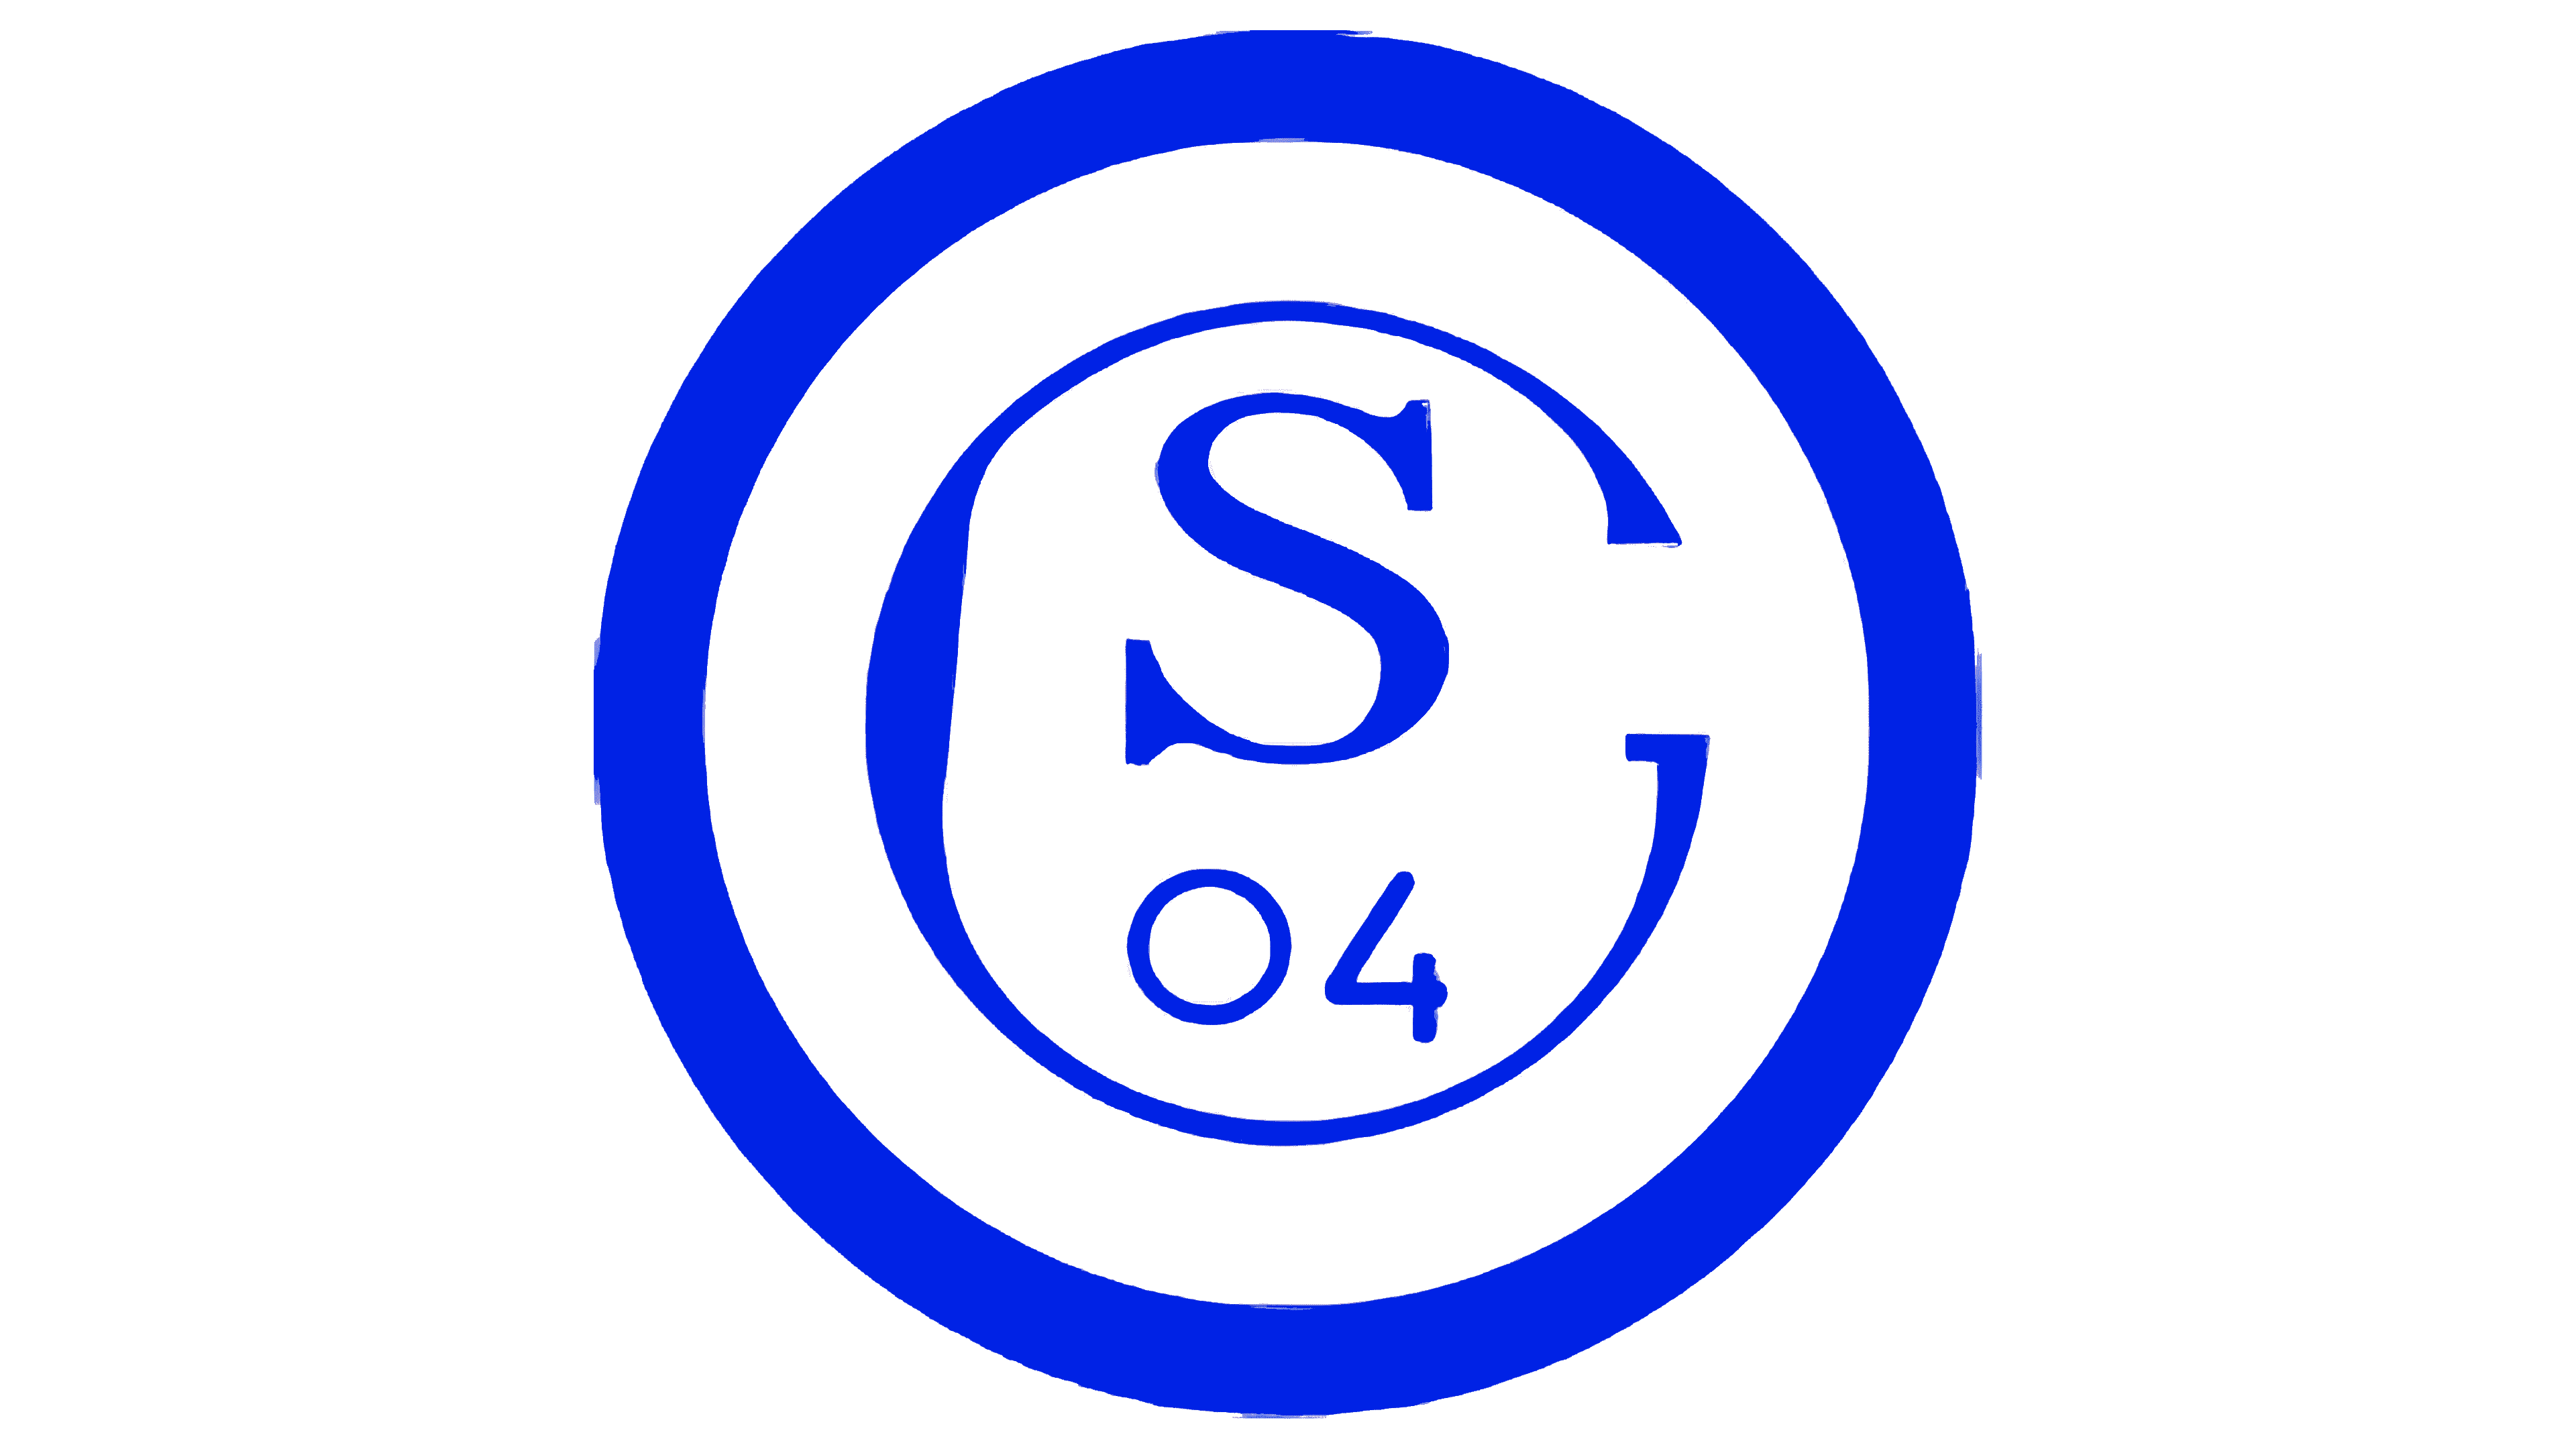 FC Schalke 04 S04 Schneekugel Weihnachten Logo 11954 